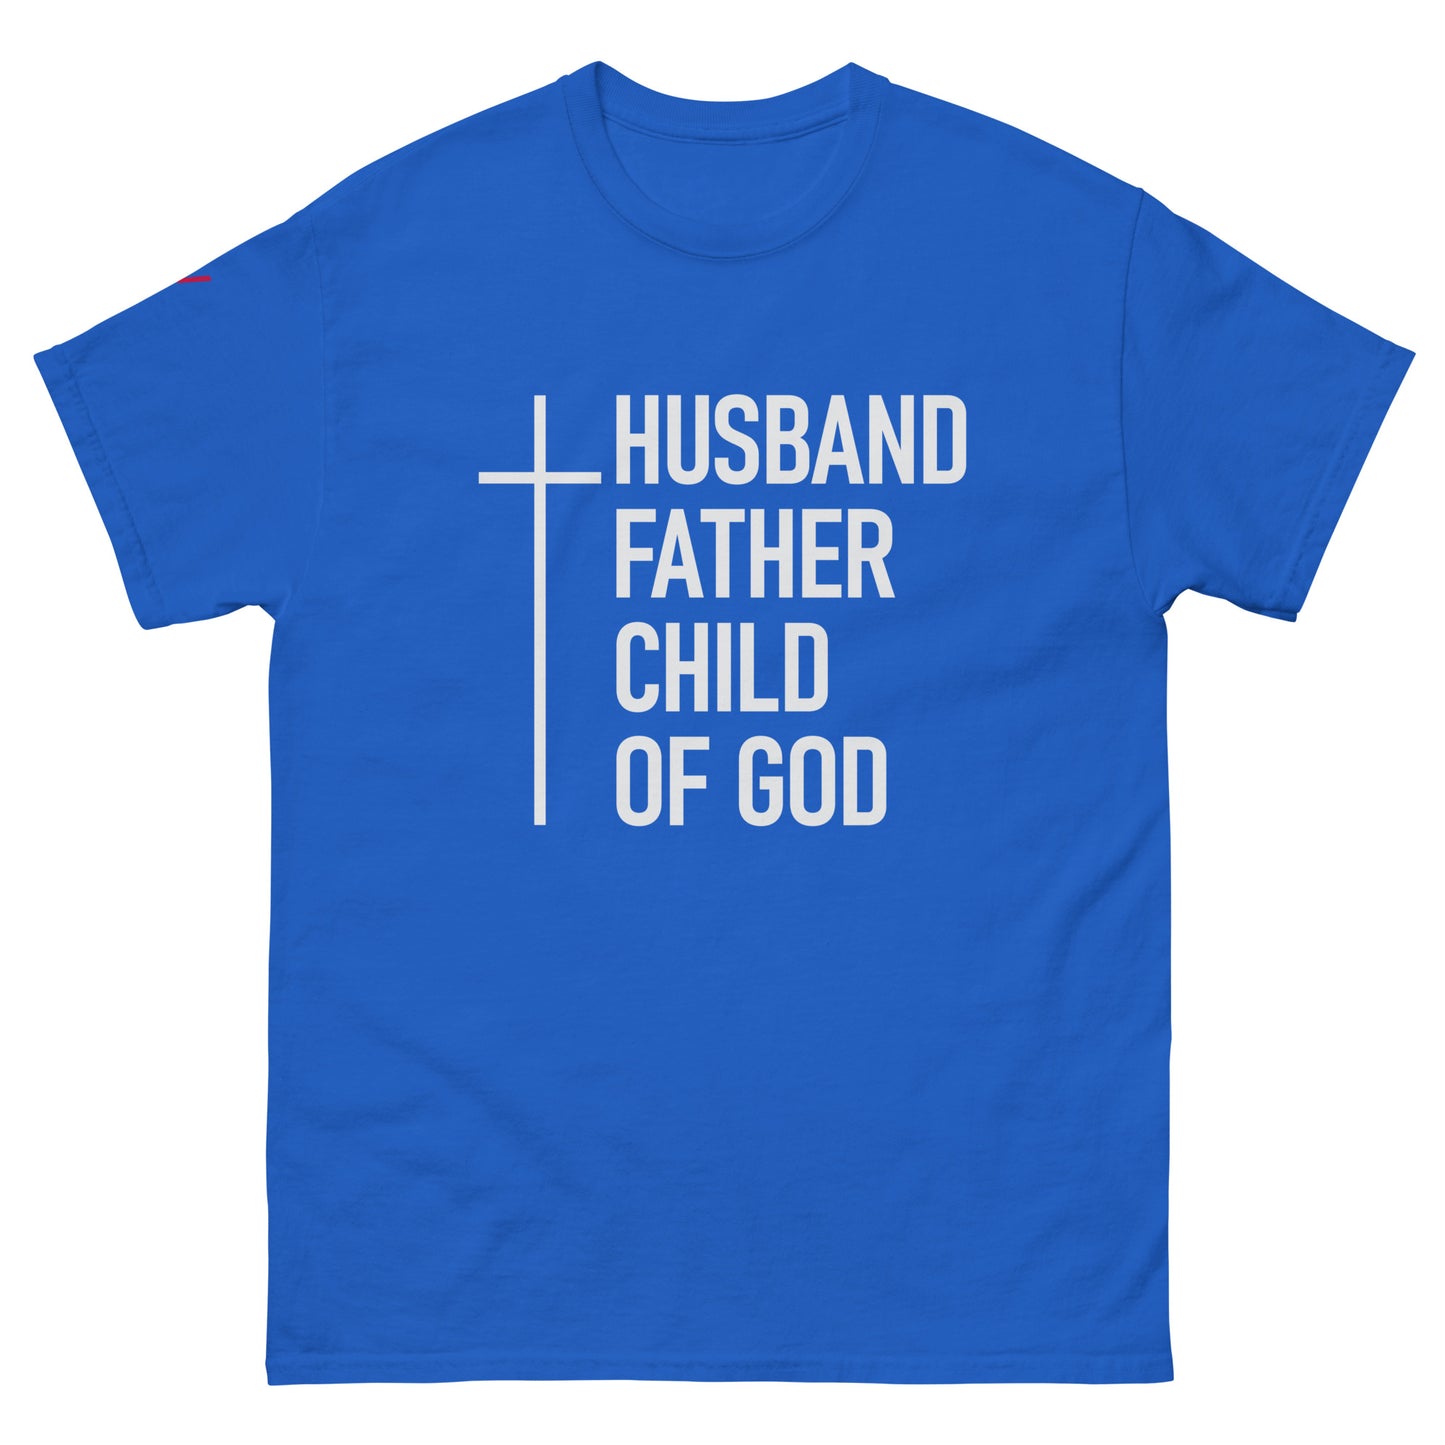 Husband Child of God Shirt